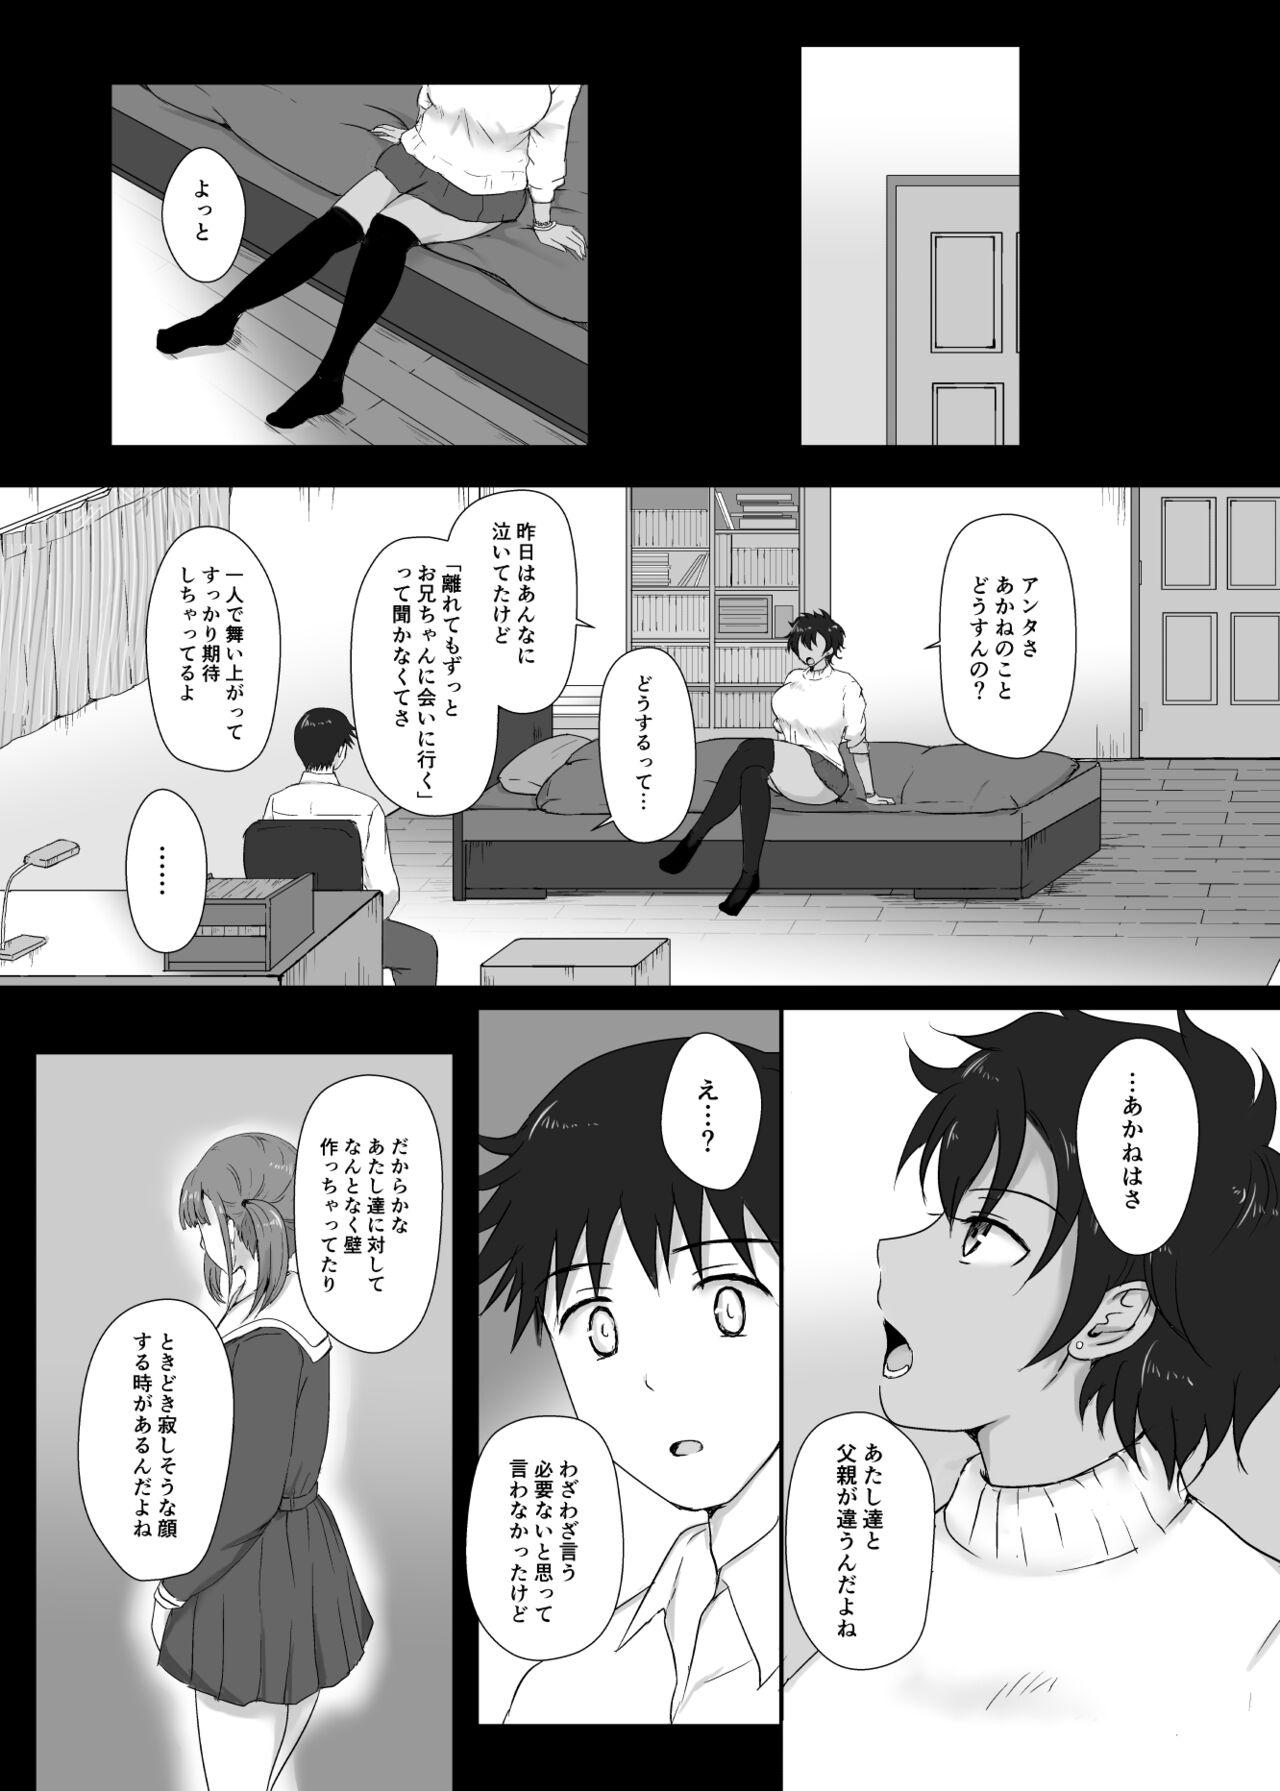 Cutie 僕と三姉妹+1 - Original Behind - Page 7